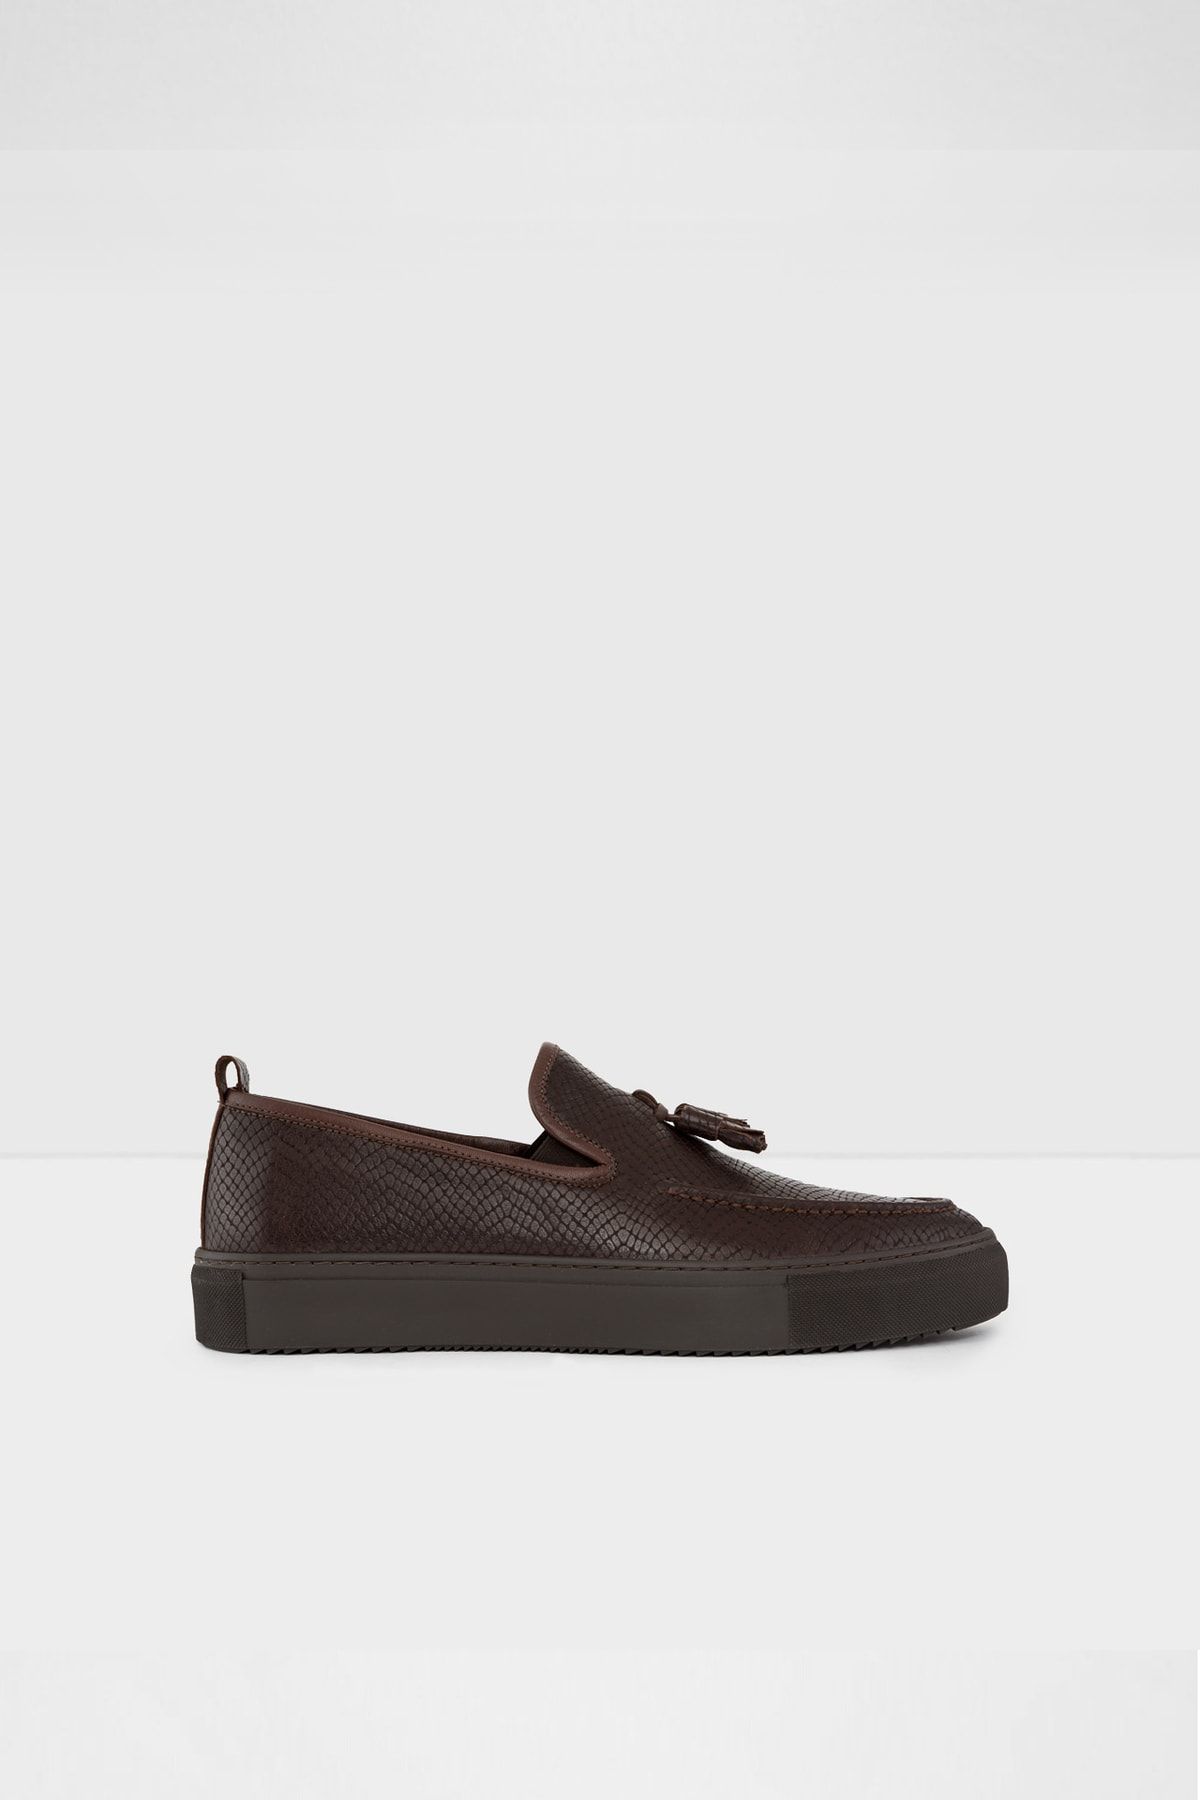 Aldo Erkek Kahverengi Loafer Ayakkabı